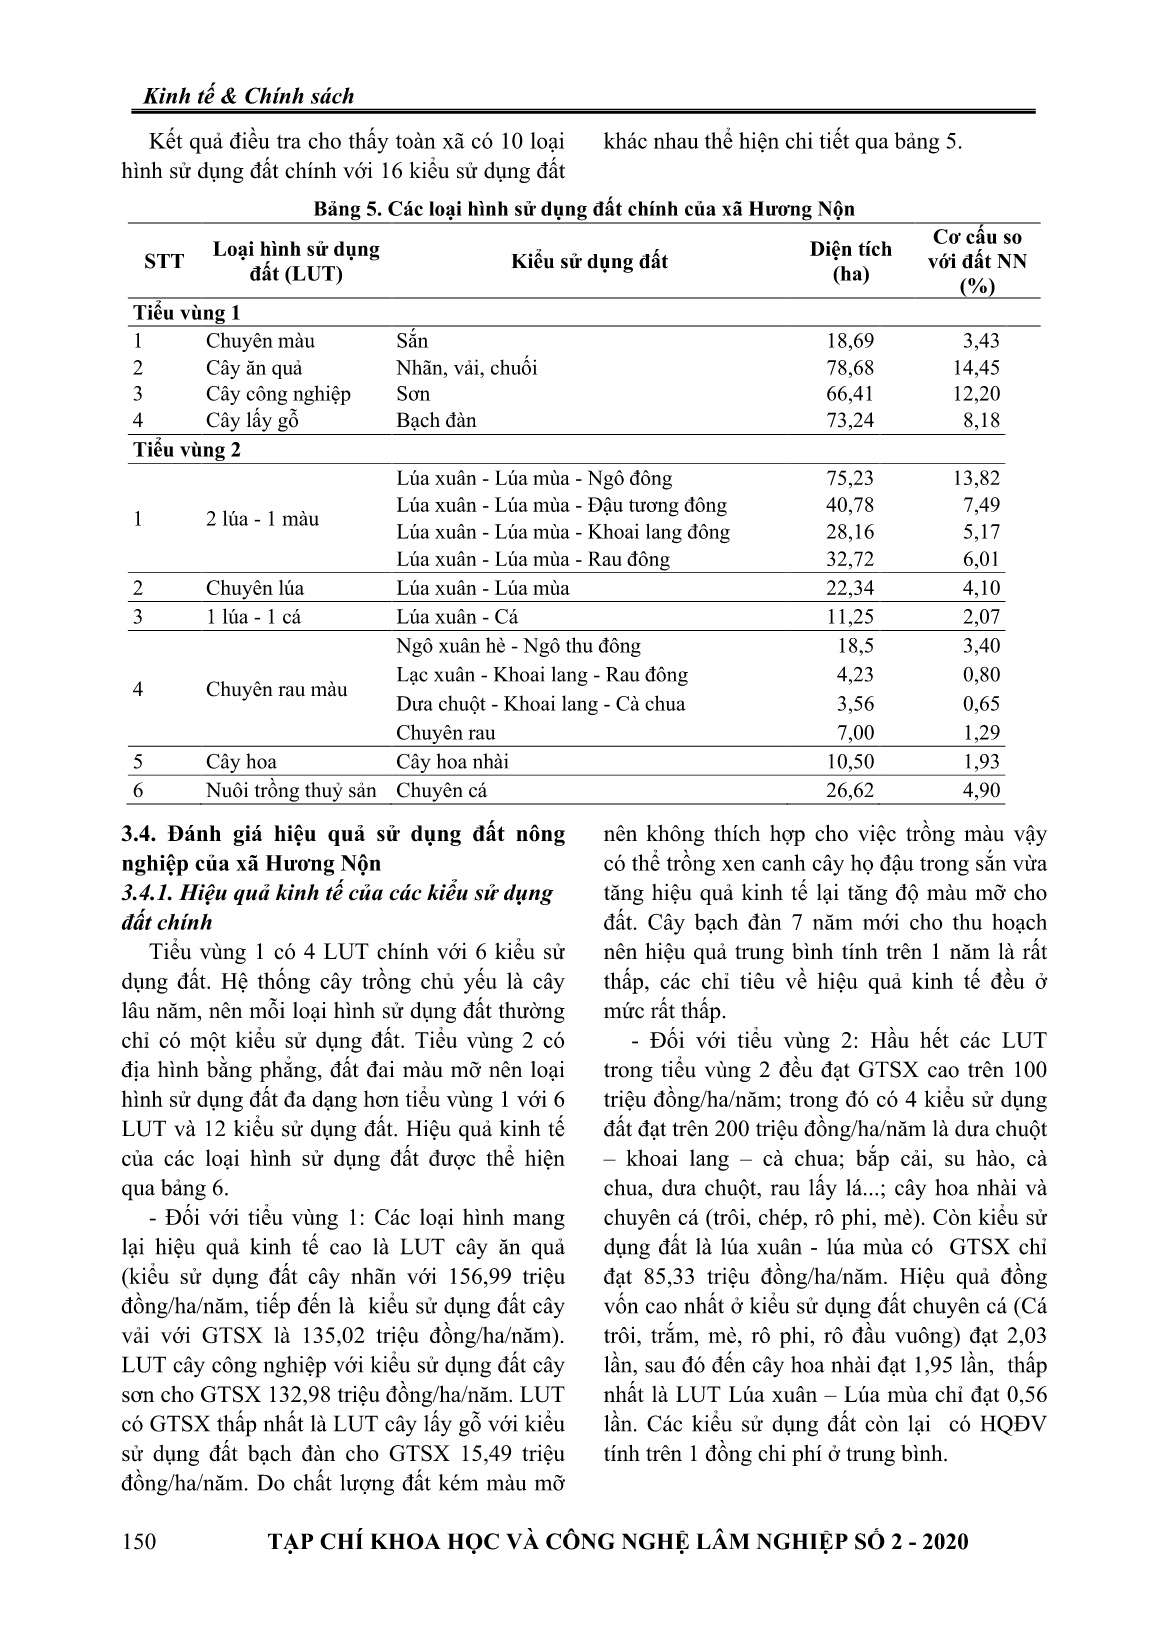 Đánh giá hiệu quả sử dụng đất sản xuất nông nghiệp tại xã Hương Nộn, huyện Tam Nông, tỉnh Phú Thọ trang 4